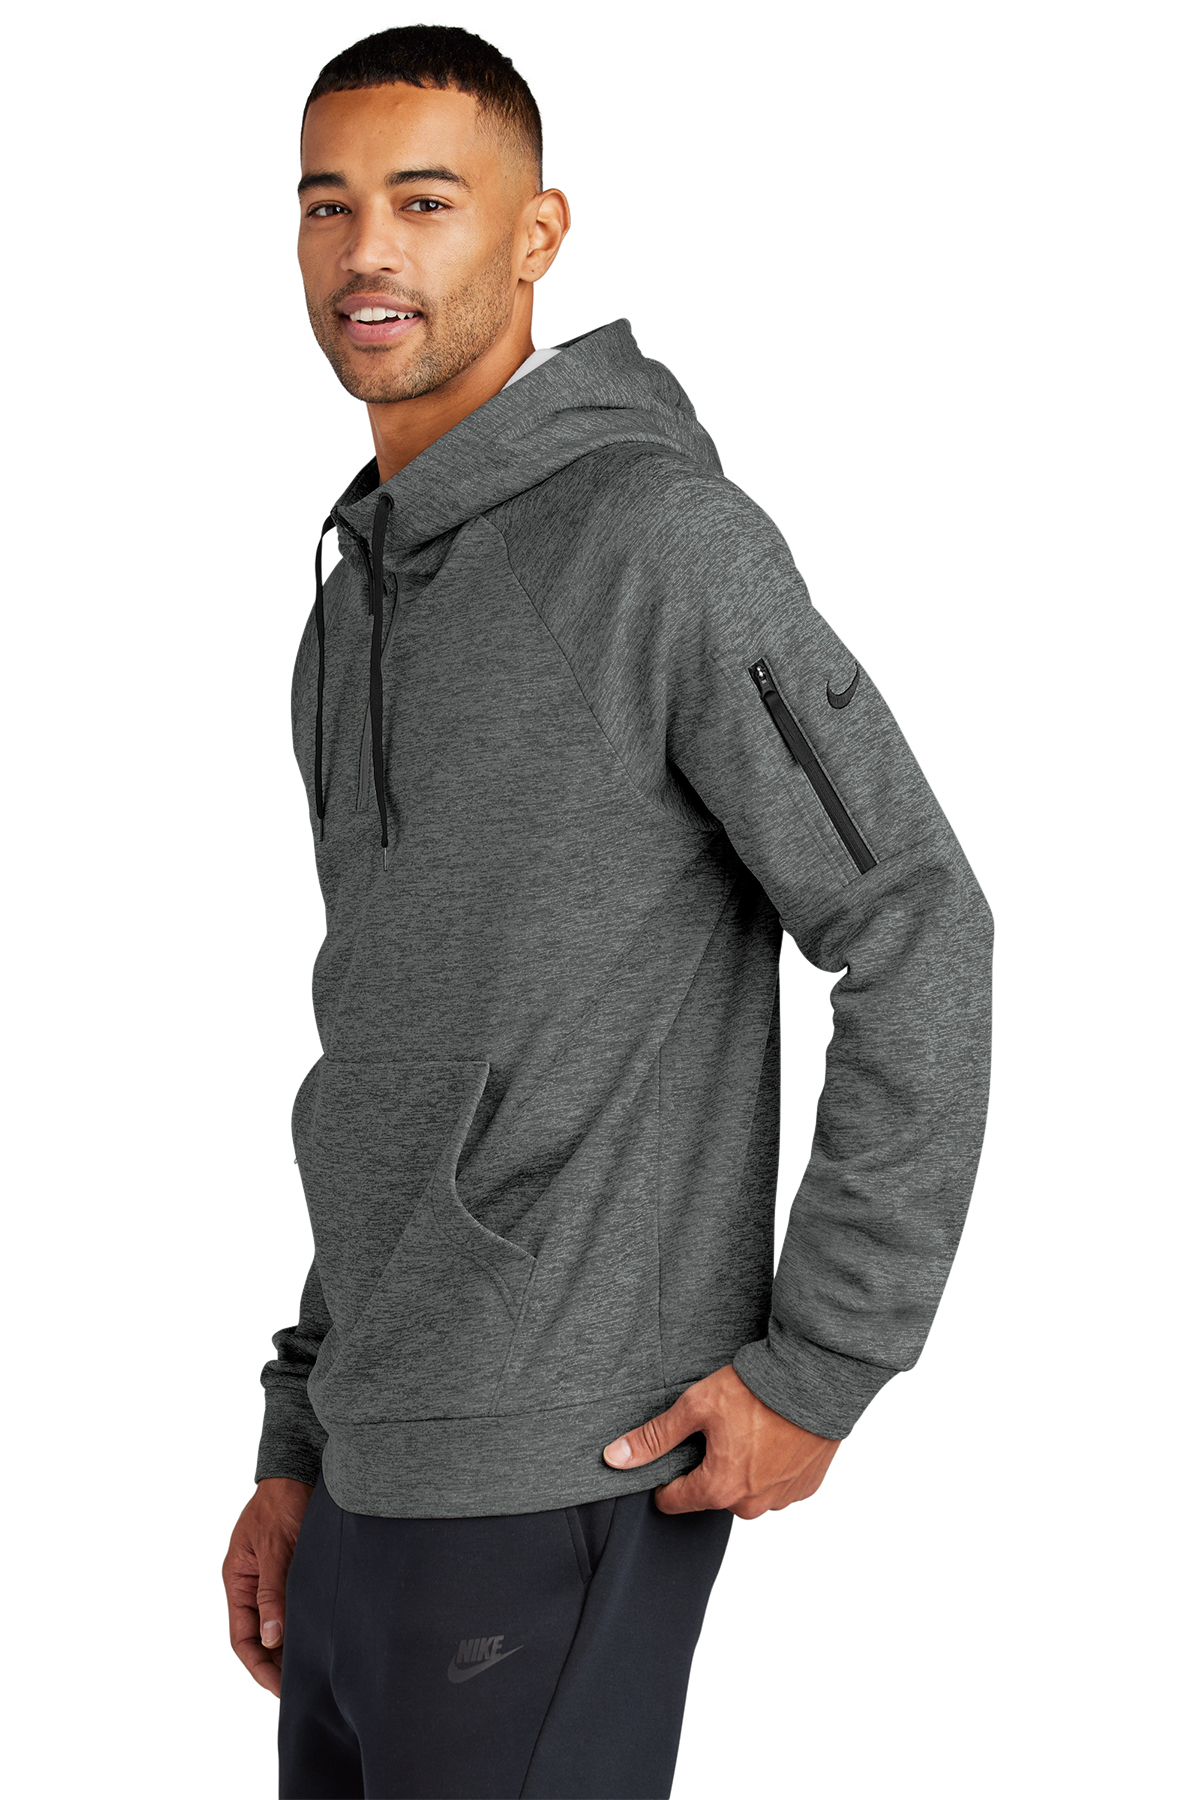 Nike Therma-FIT Pocket 1/4-Zip Fleece Hoodie | Product | SanMar